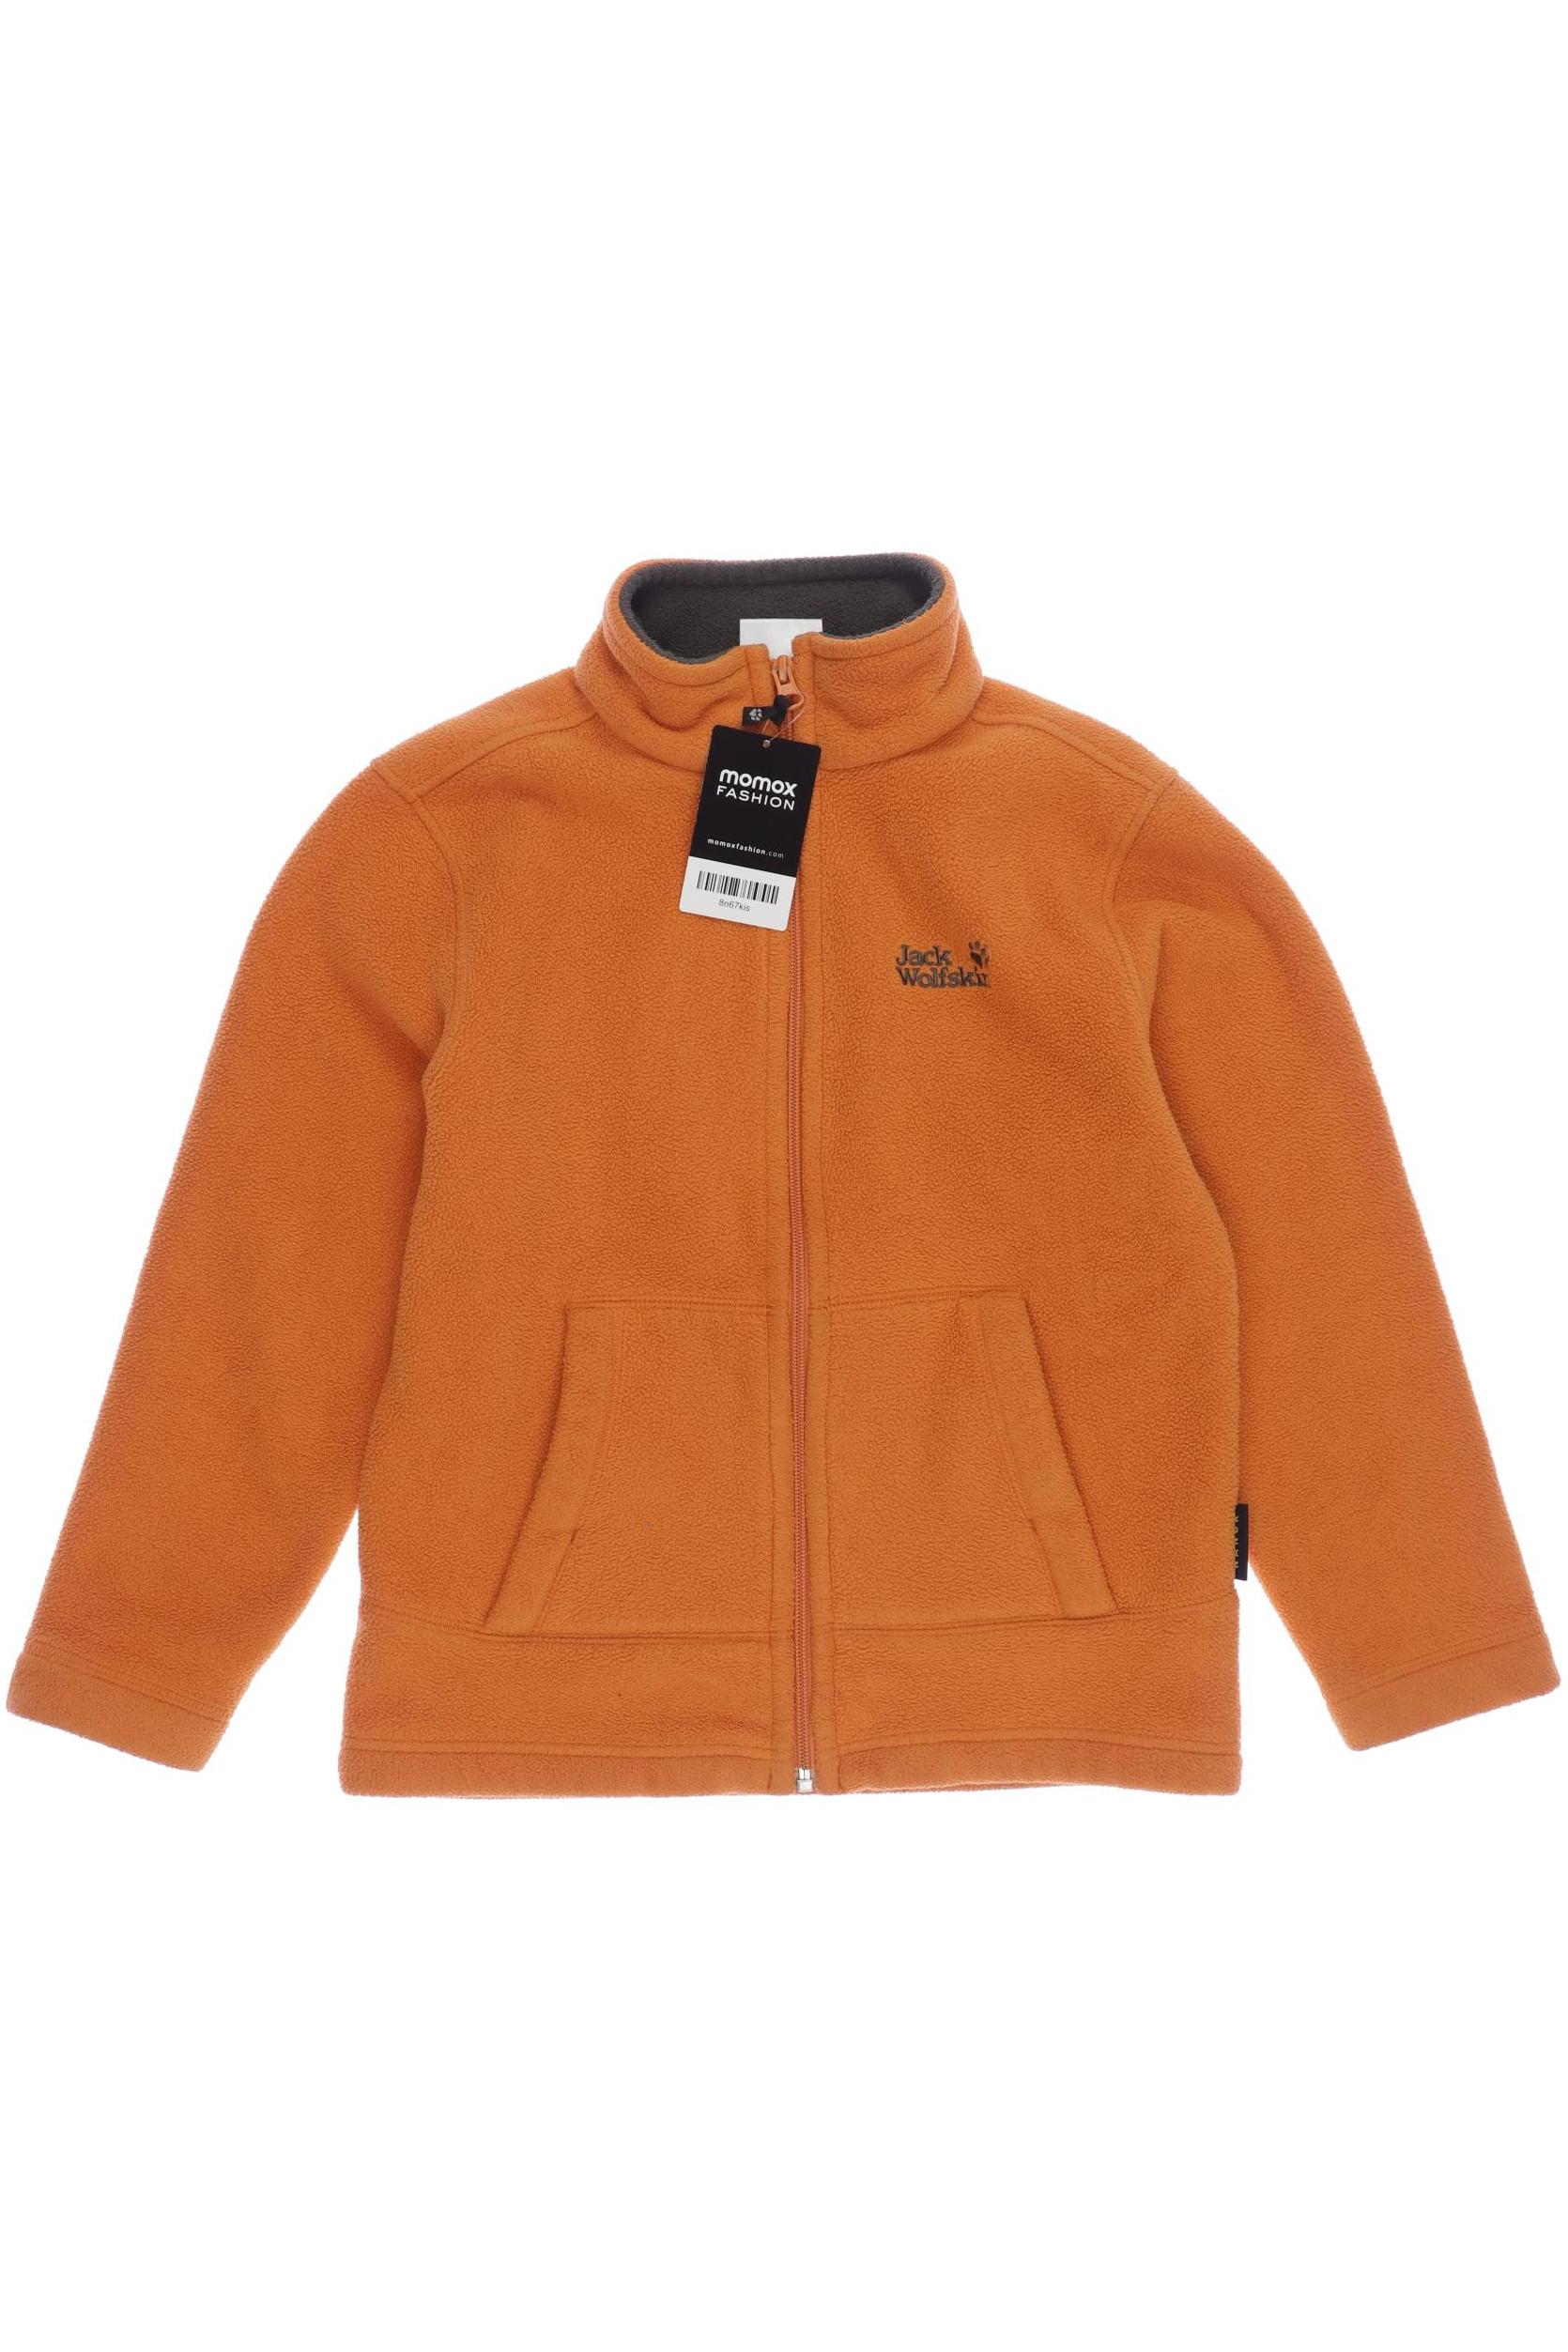 Jack Wolfskin Jungen Hoodies & Sweater, orange von Jack Wolfskin